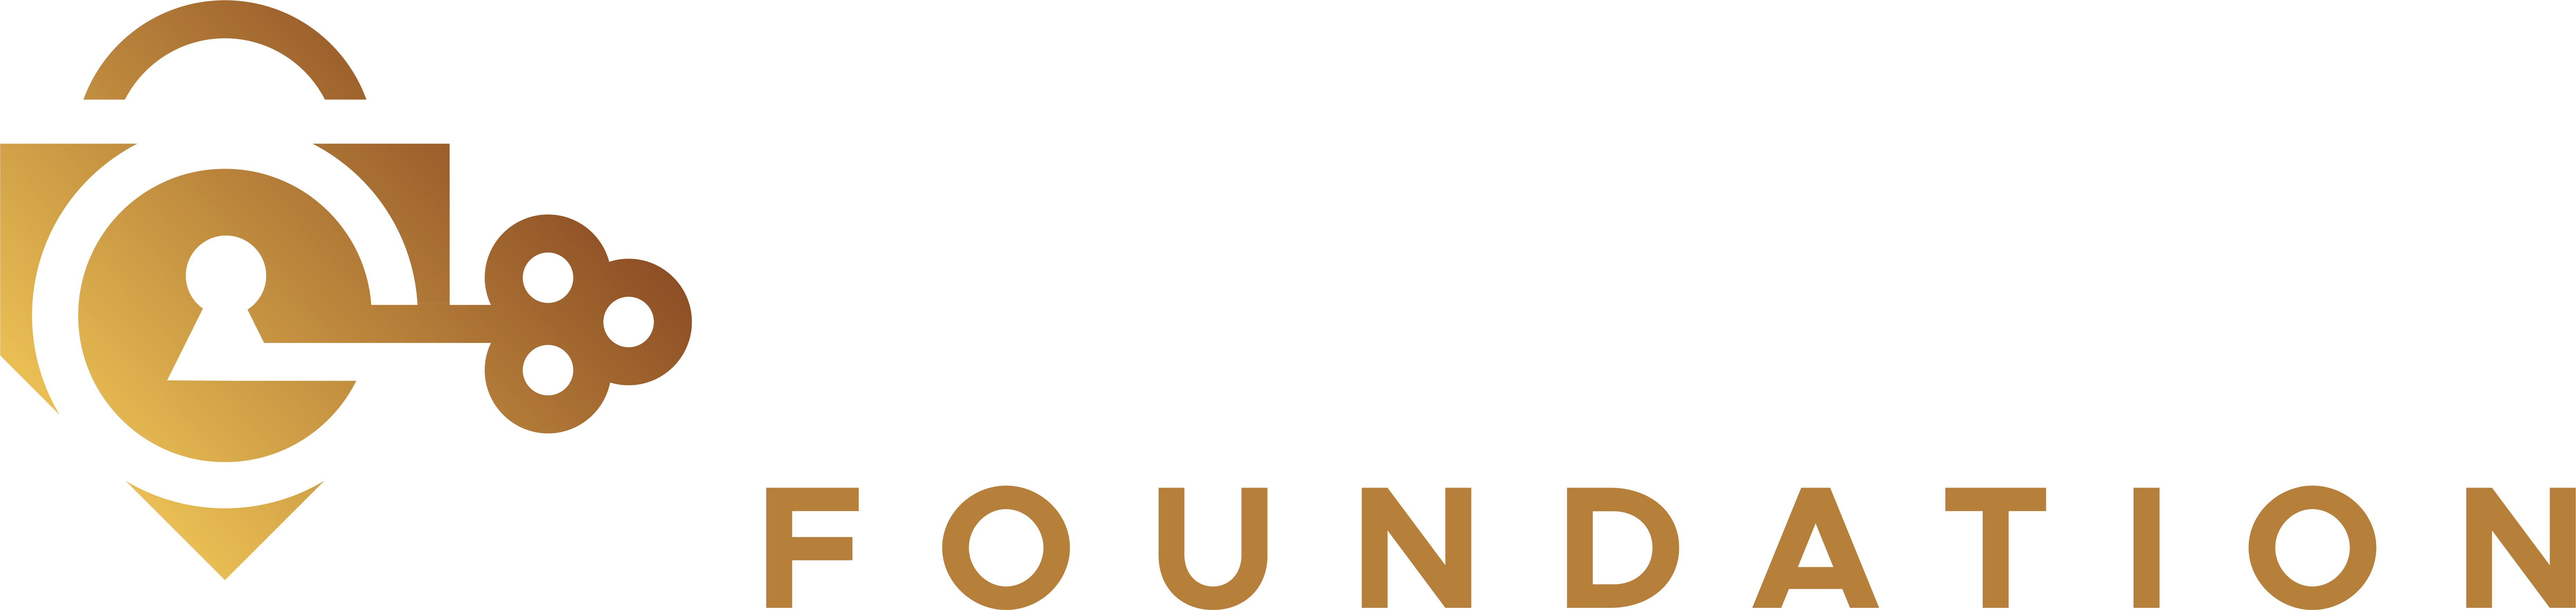 Kenza Foundation